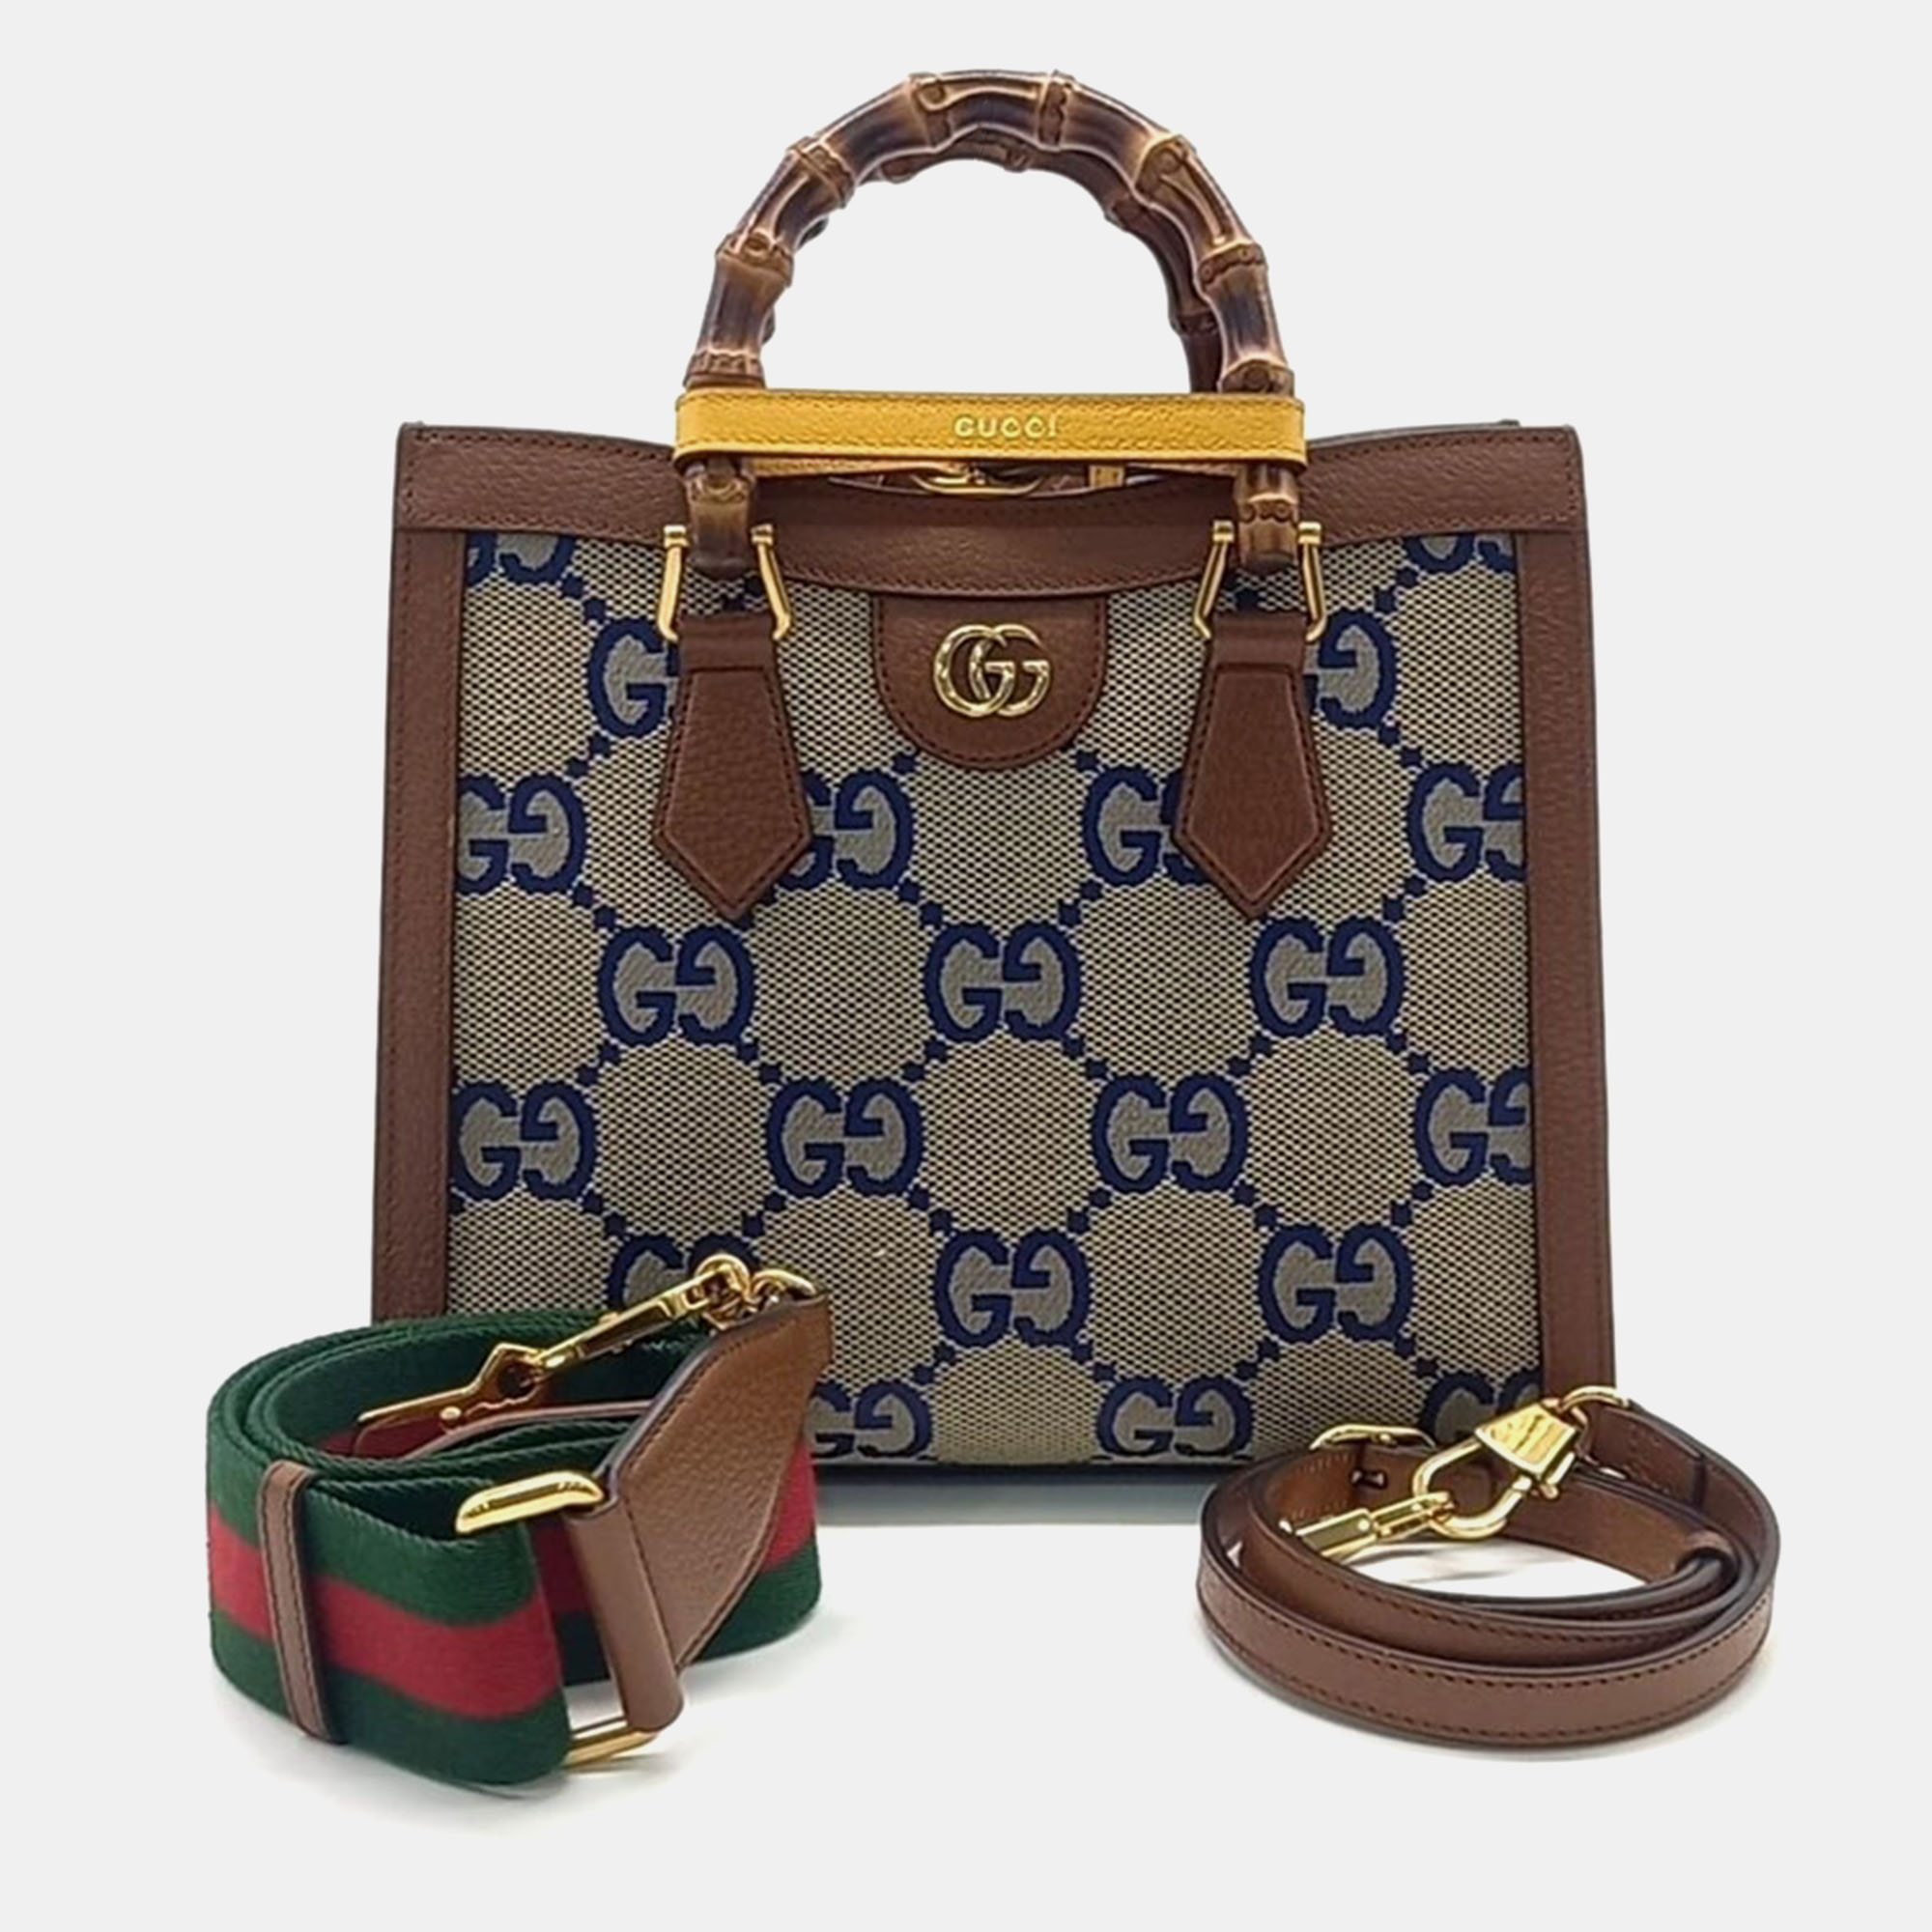 Gucci diana tote & shoulder bag